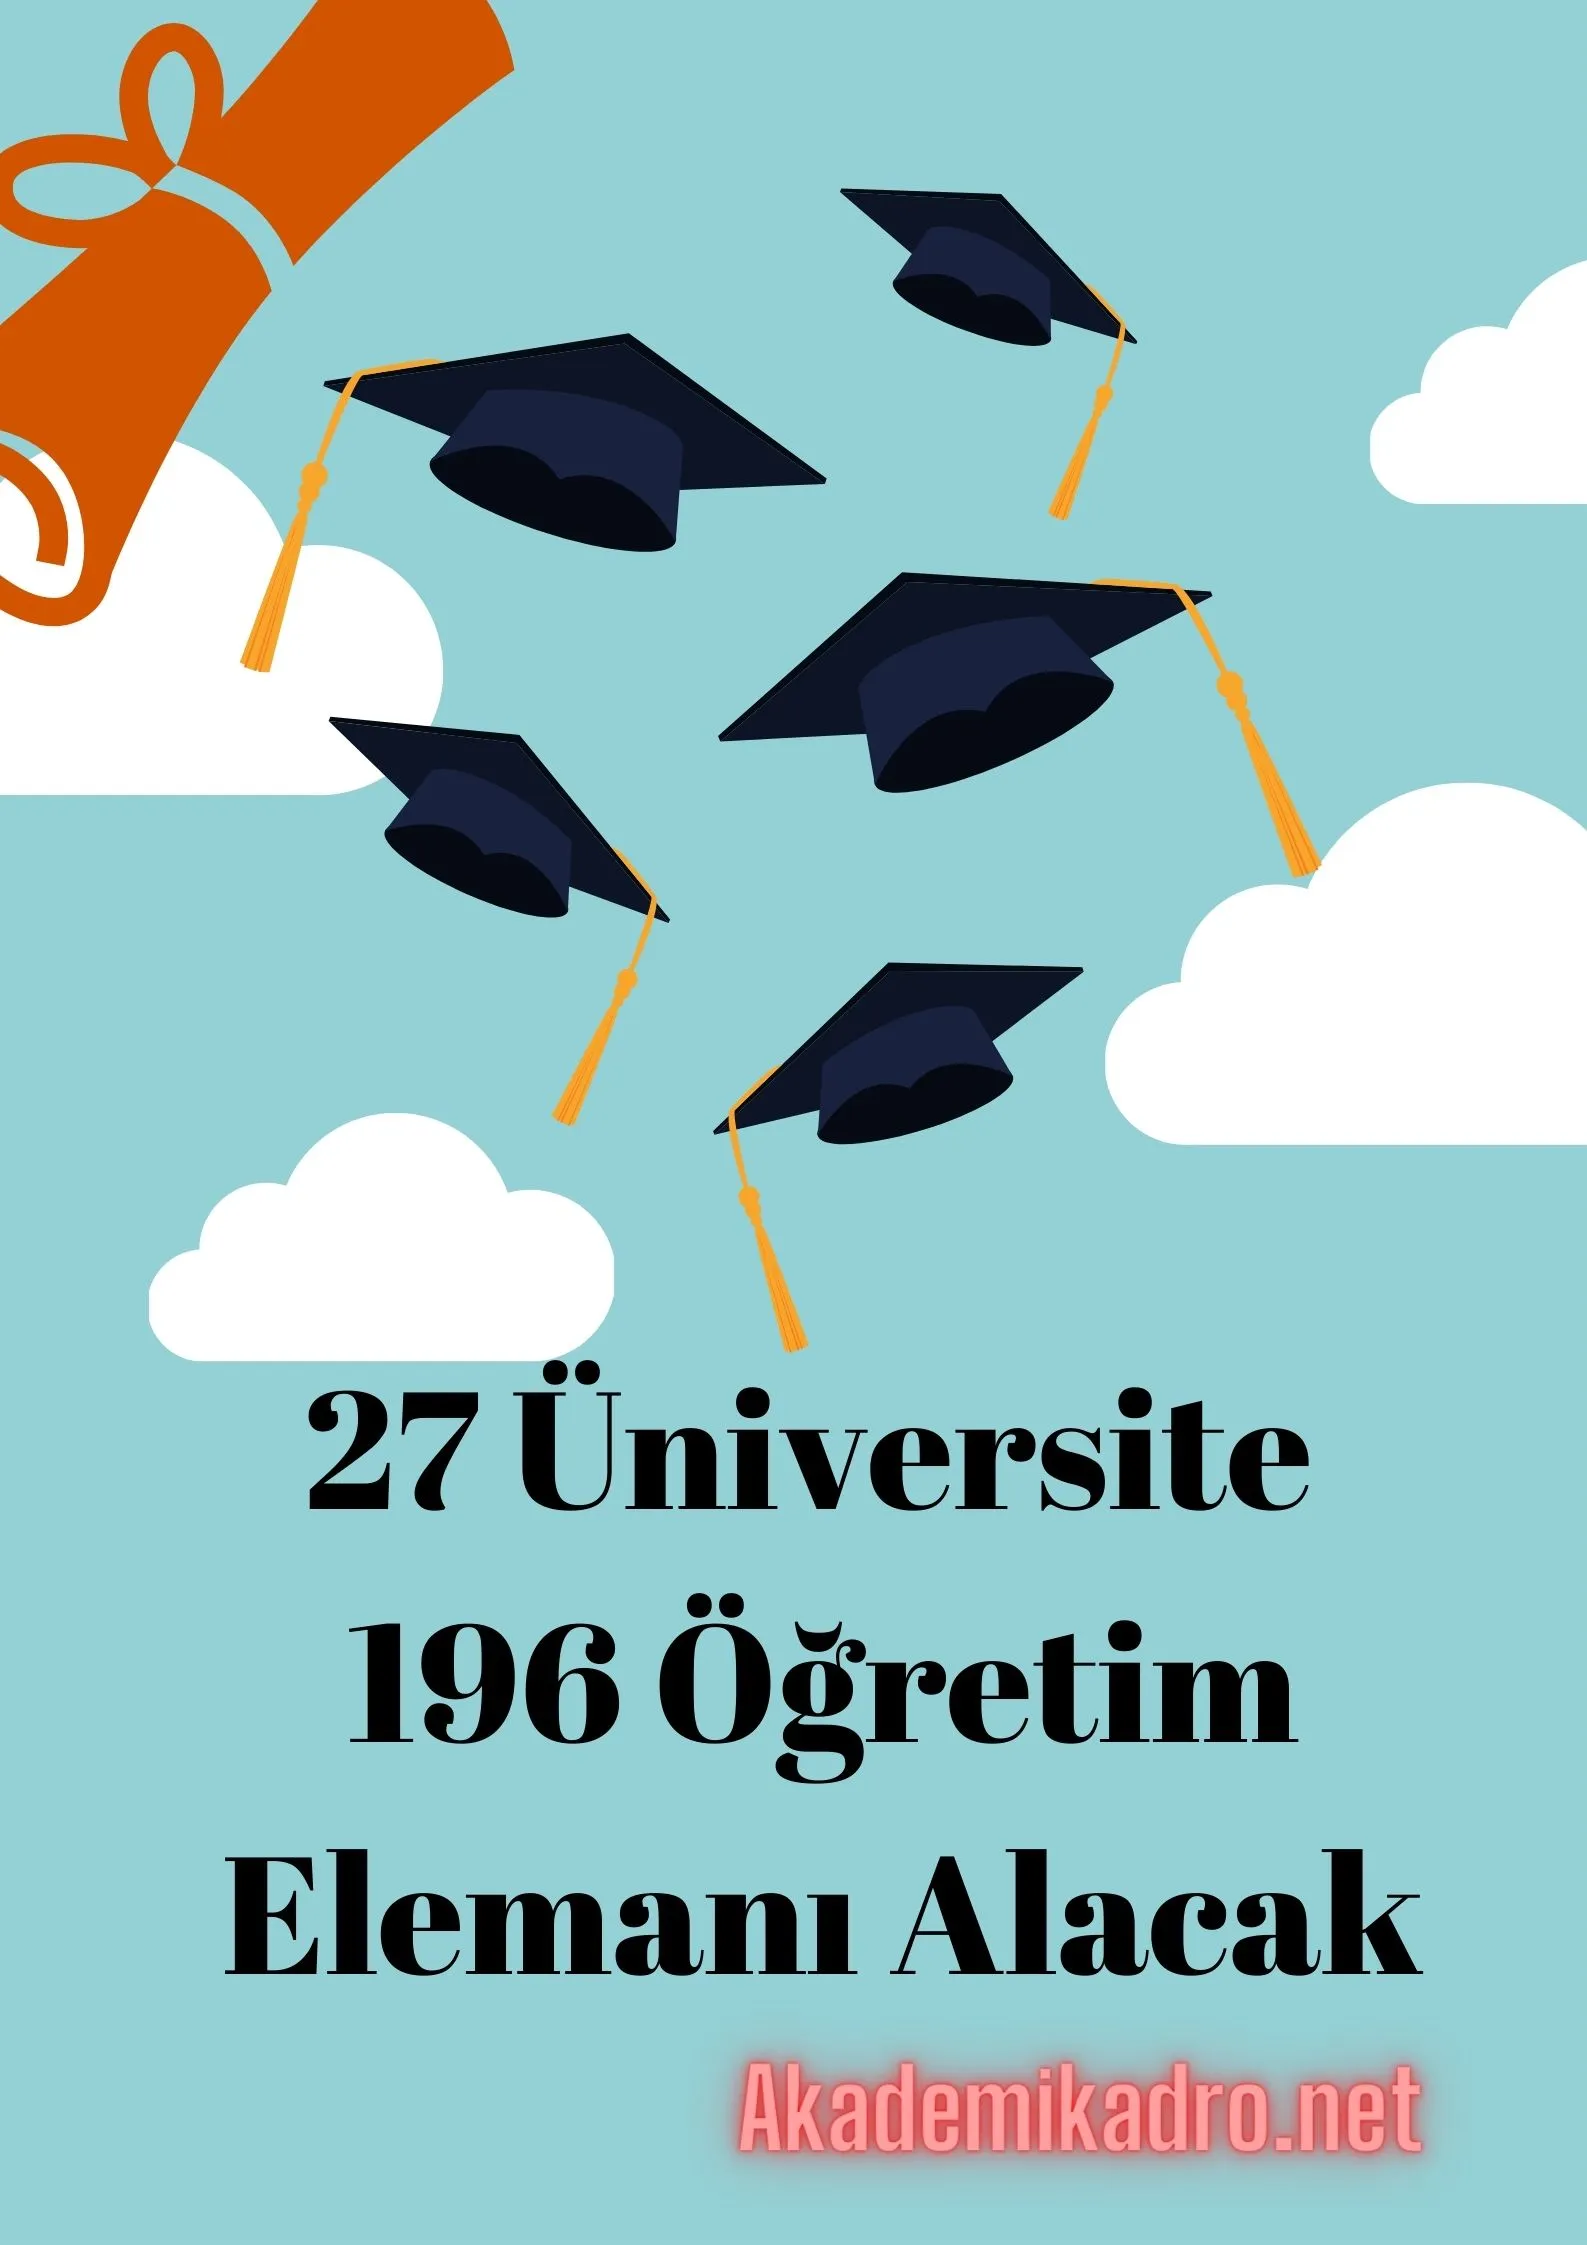 27 Üniversitenin 95 Araştırma görevlisi ve 101 Öğretim görevlisi alım ilanına son başvuru süreleri ile birlikte bu linkten ulaşabilirsiniz.